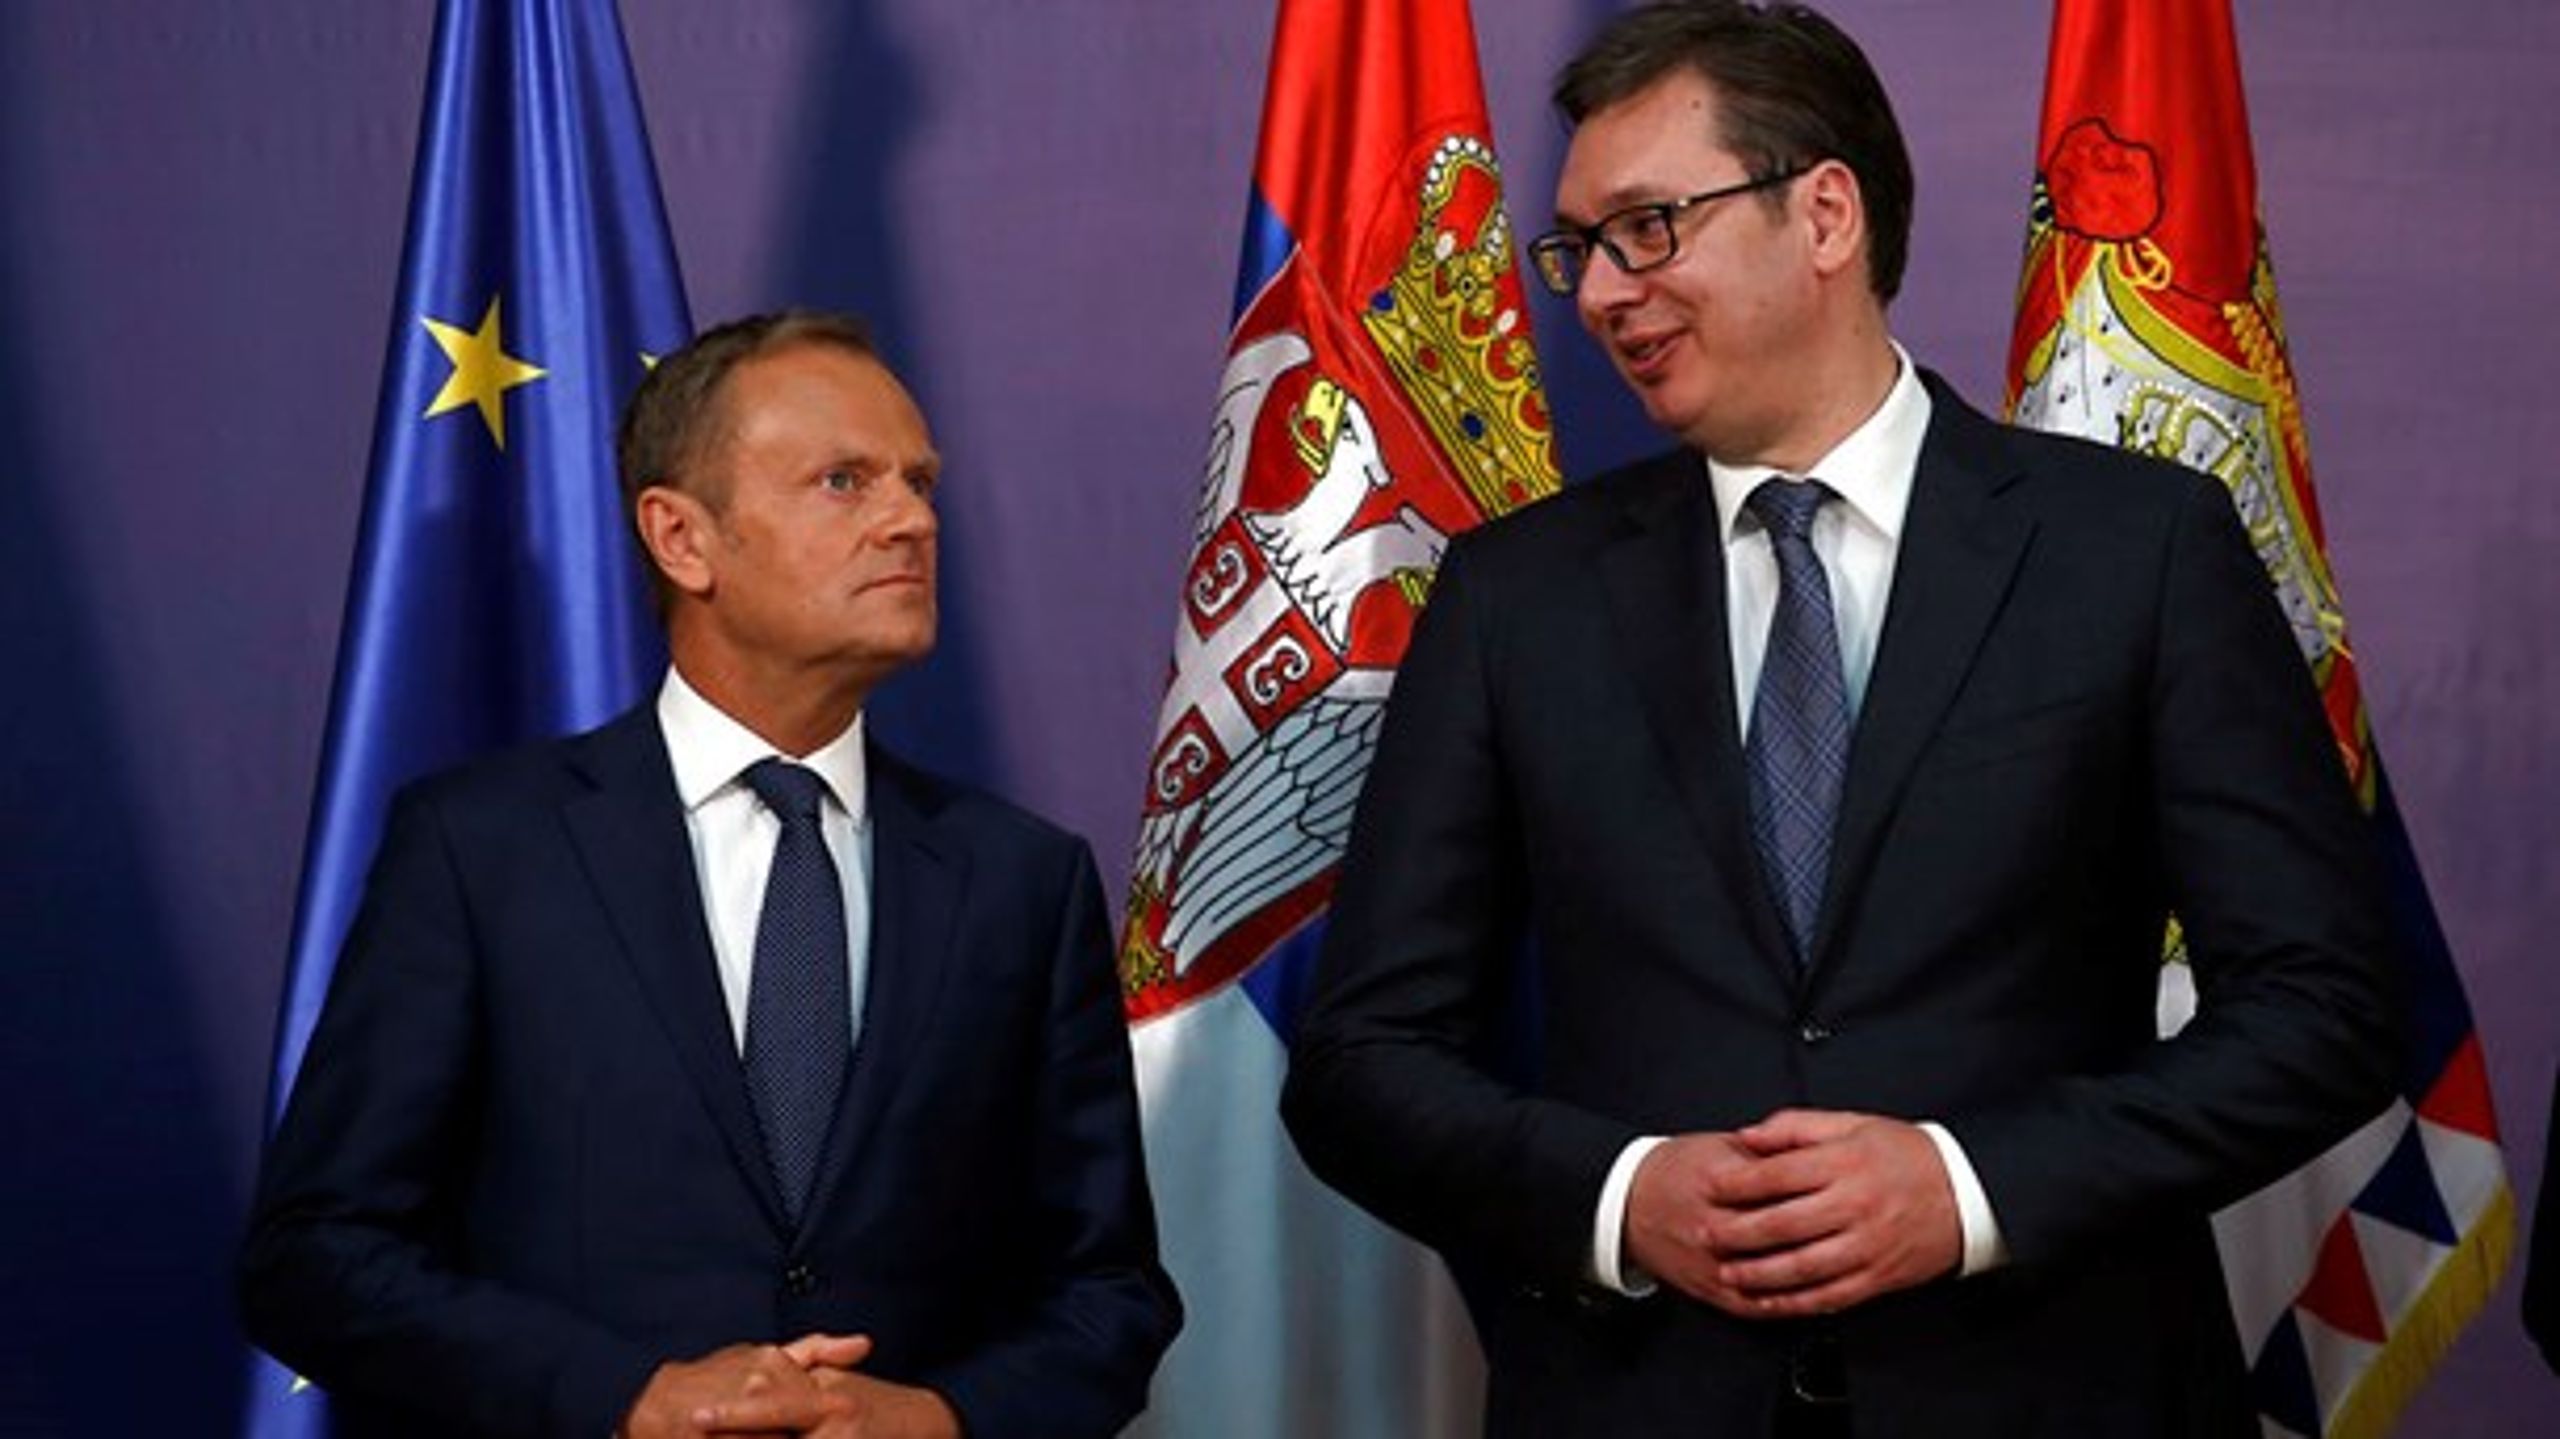 Den serbiske premierminister, Aleksander Vucic, hilser på formanden for Det Europæiske Råd, Donald Tusk. Serbien er et af seks lande, hvis mulige EU-medlemskab skal diskuteres i Sofia.